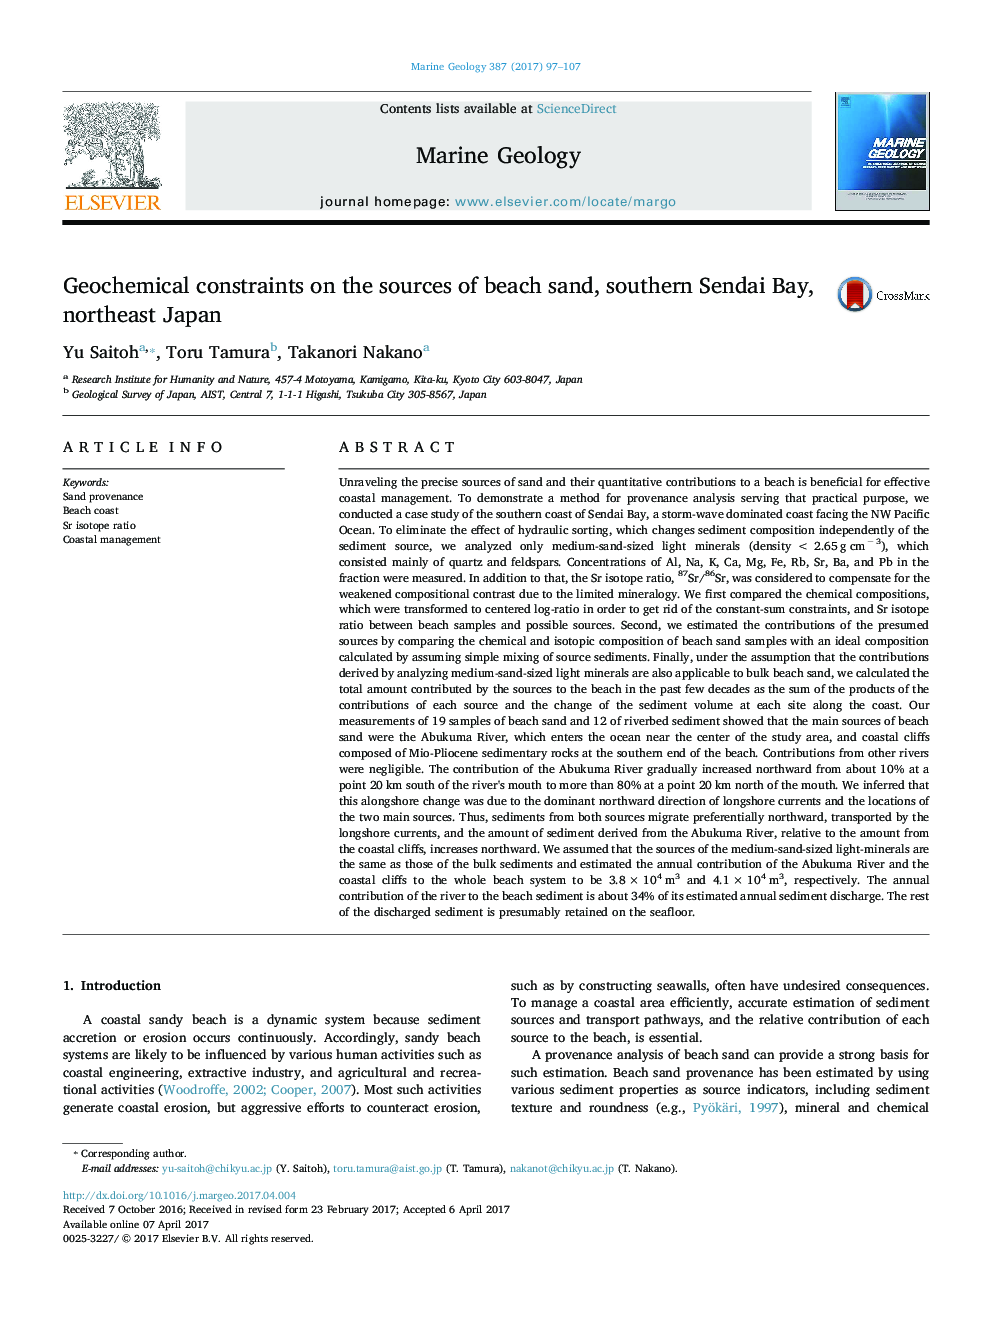 محدودیت های ژئوشیمیایی در منابع شن و ماسه ساحلی، جنوبی شنیدن خلیج، شمال شرقی ژاپن